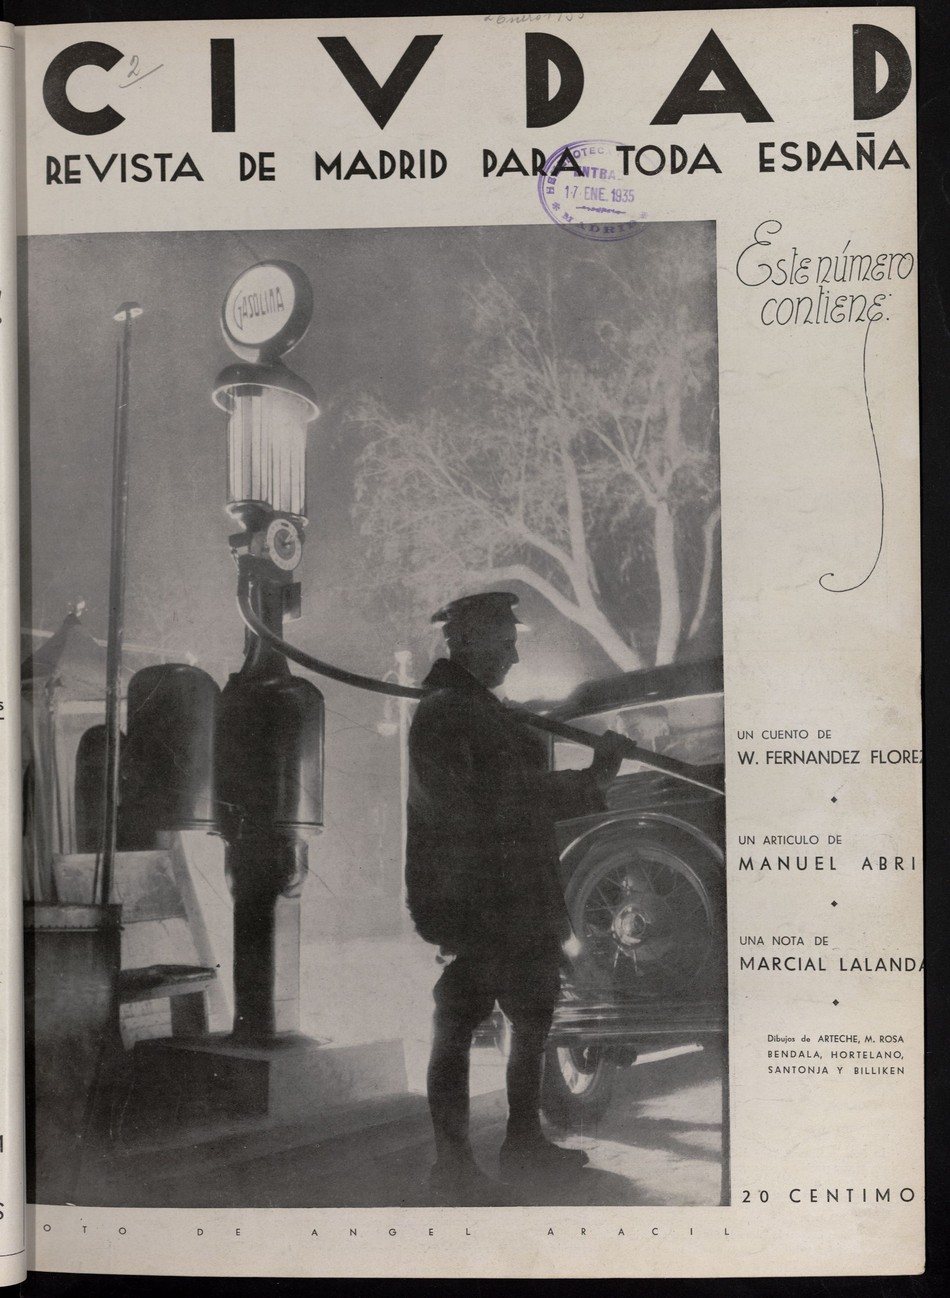 Ciudad: revista de Madrid para toda España del 2 de enero de 1935